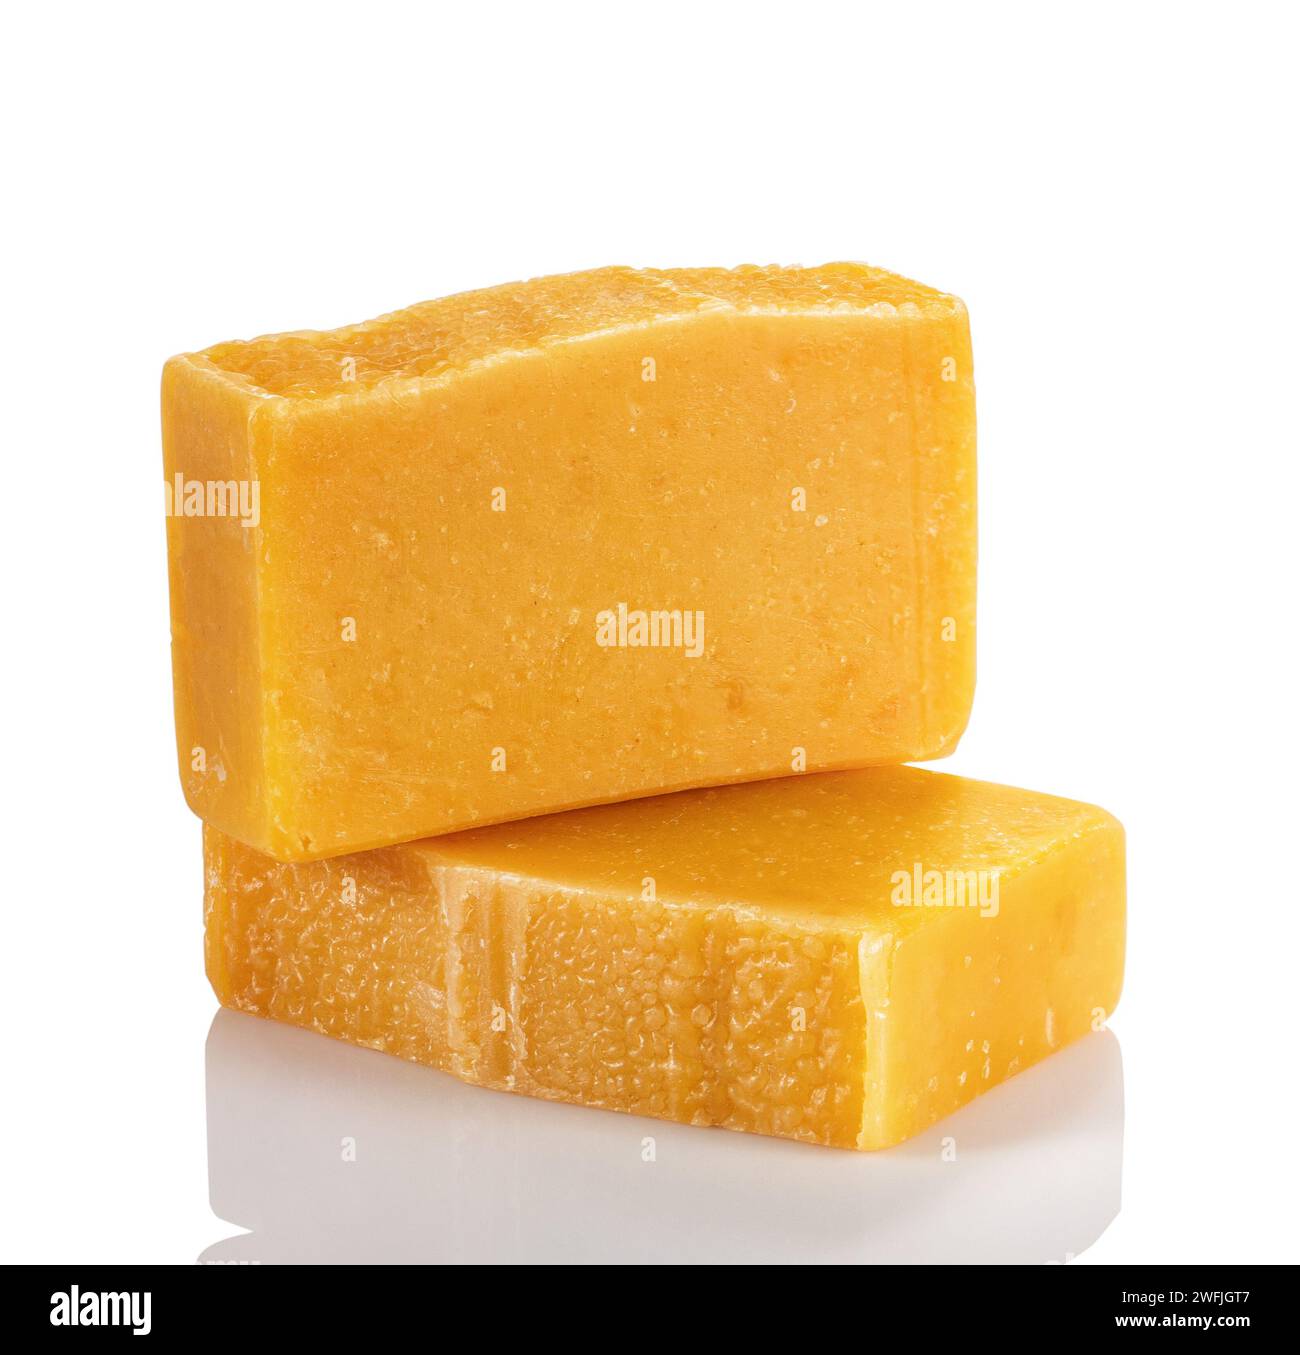 Handgefertigte Bio-Seife aus natürlichen Produkten. Zwei Seifenriegel mit orangefarbenem und bernsteinfarbenem Pulver auf weißem Hintergrund. Stockfoto